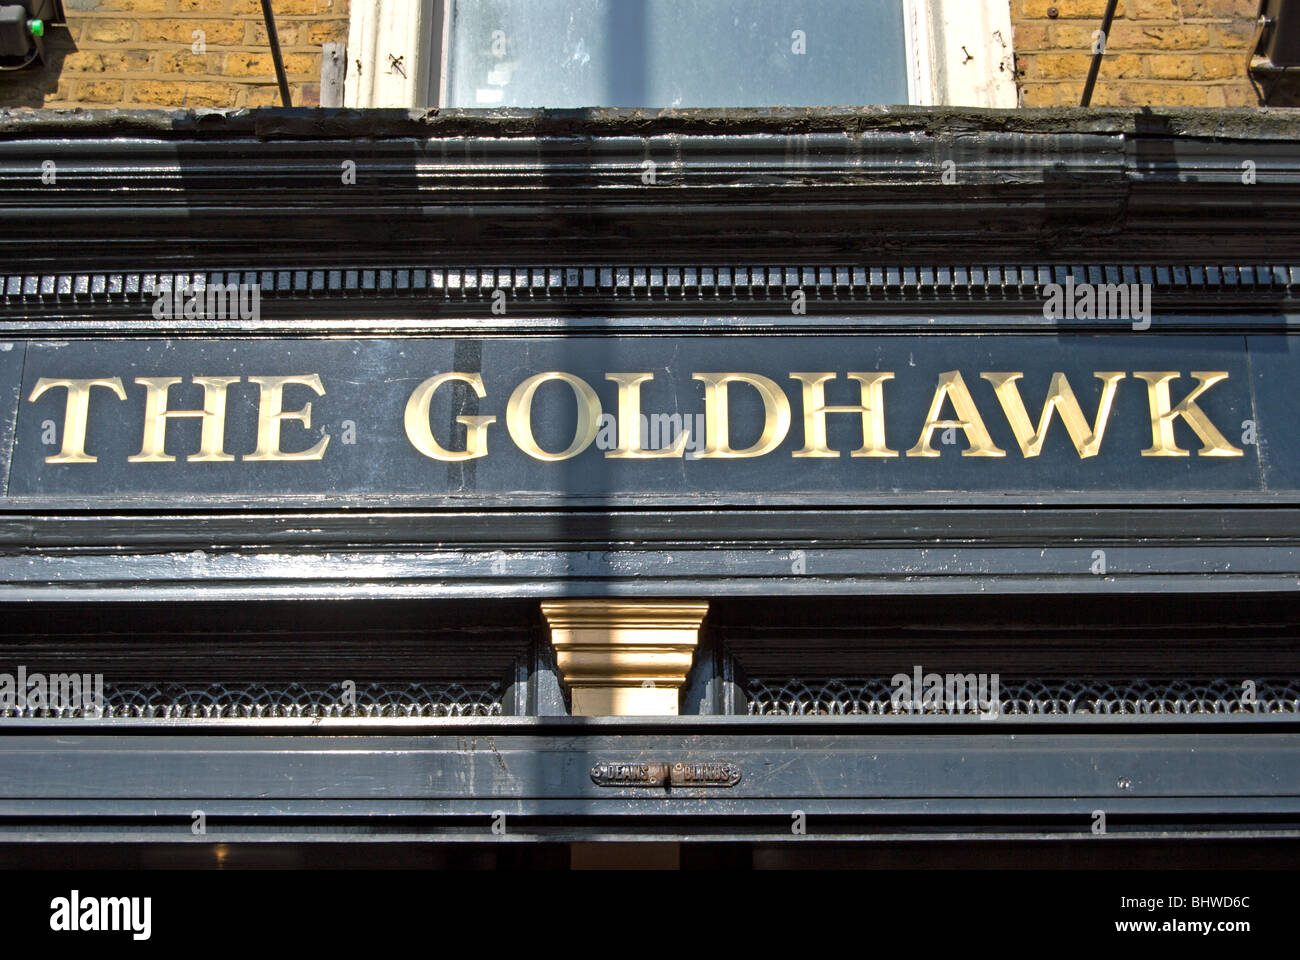 Facciata del goldhawk, un pub sulla Goldhawk road, Shepherd's Bush, a ovest di Londra - Inghilterra Foto Stock